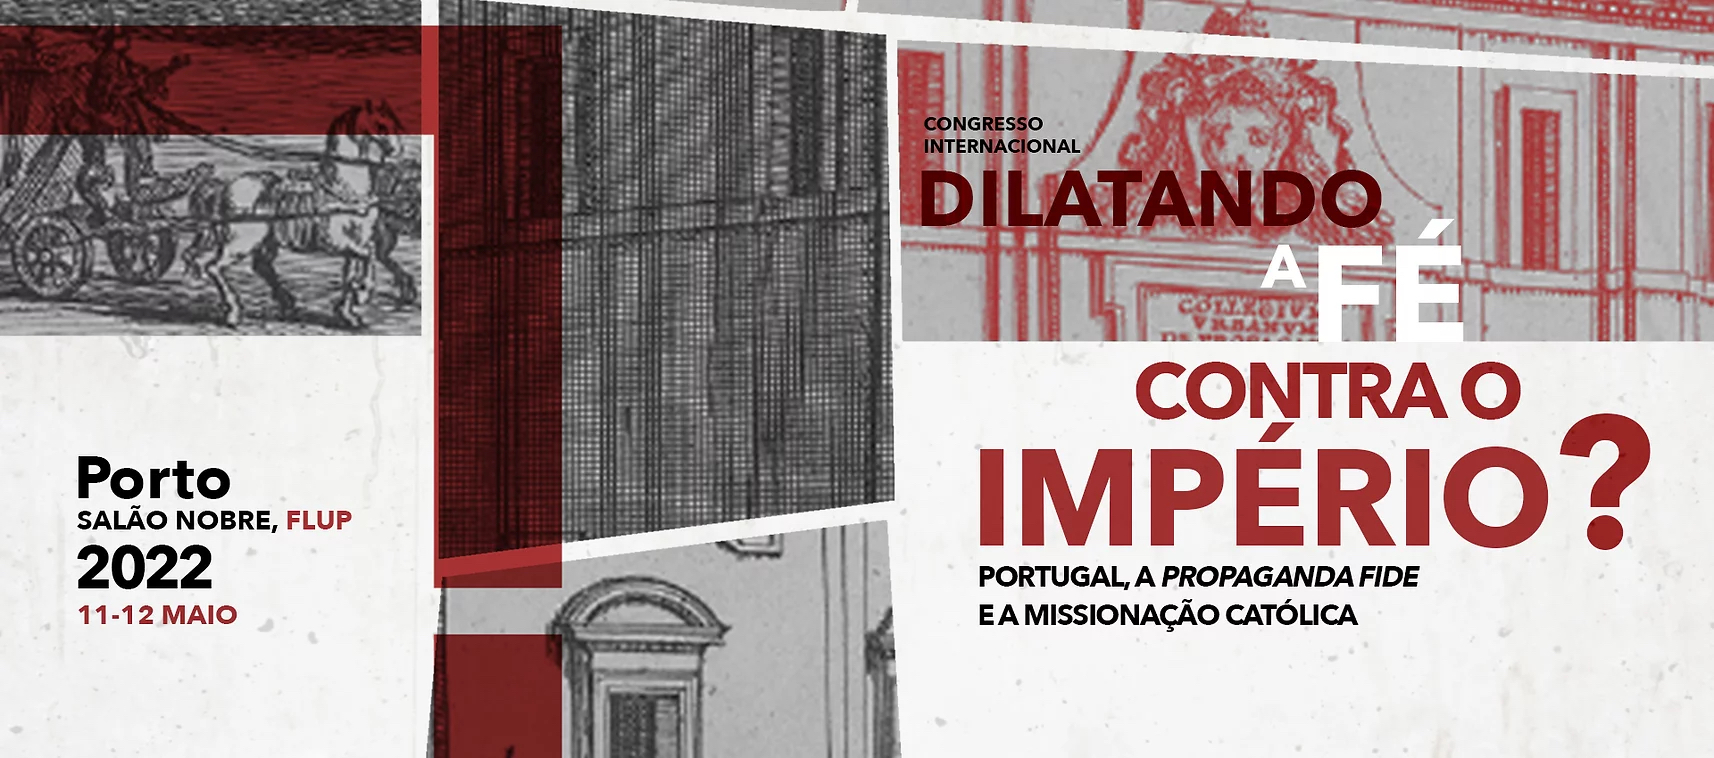 Congresso Internacional «Dilatando a Fé contra o Império? Portugal, a Propaganda Fide e a missionação católica»